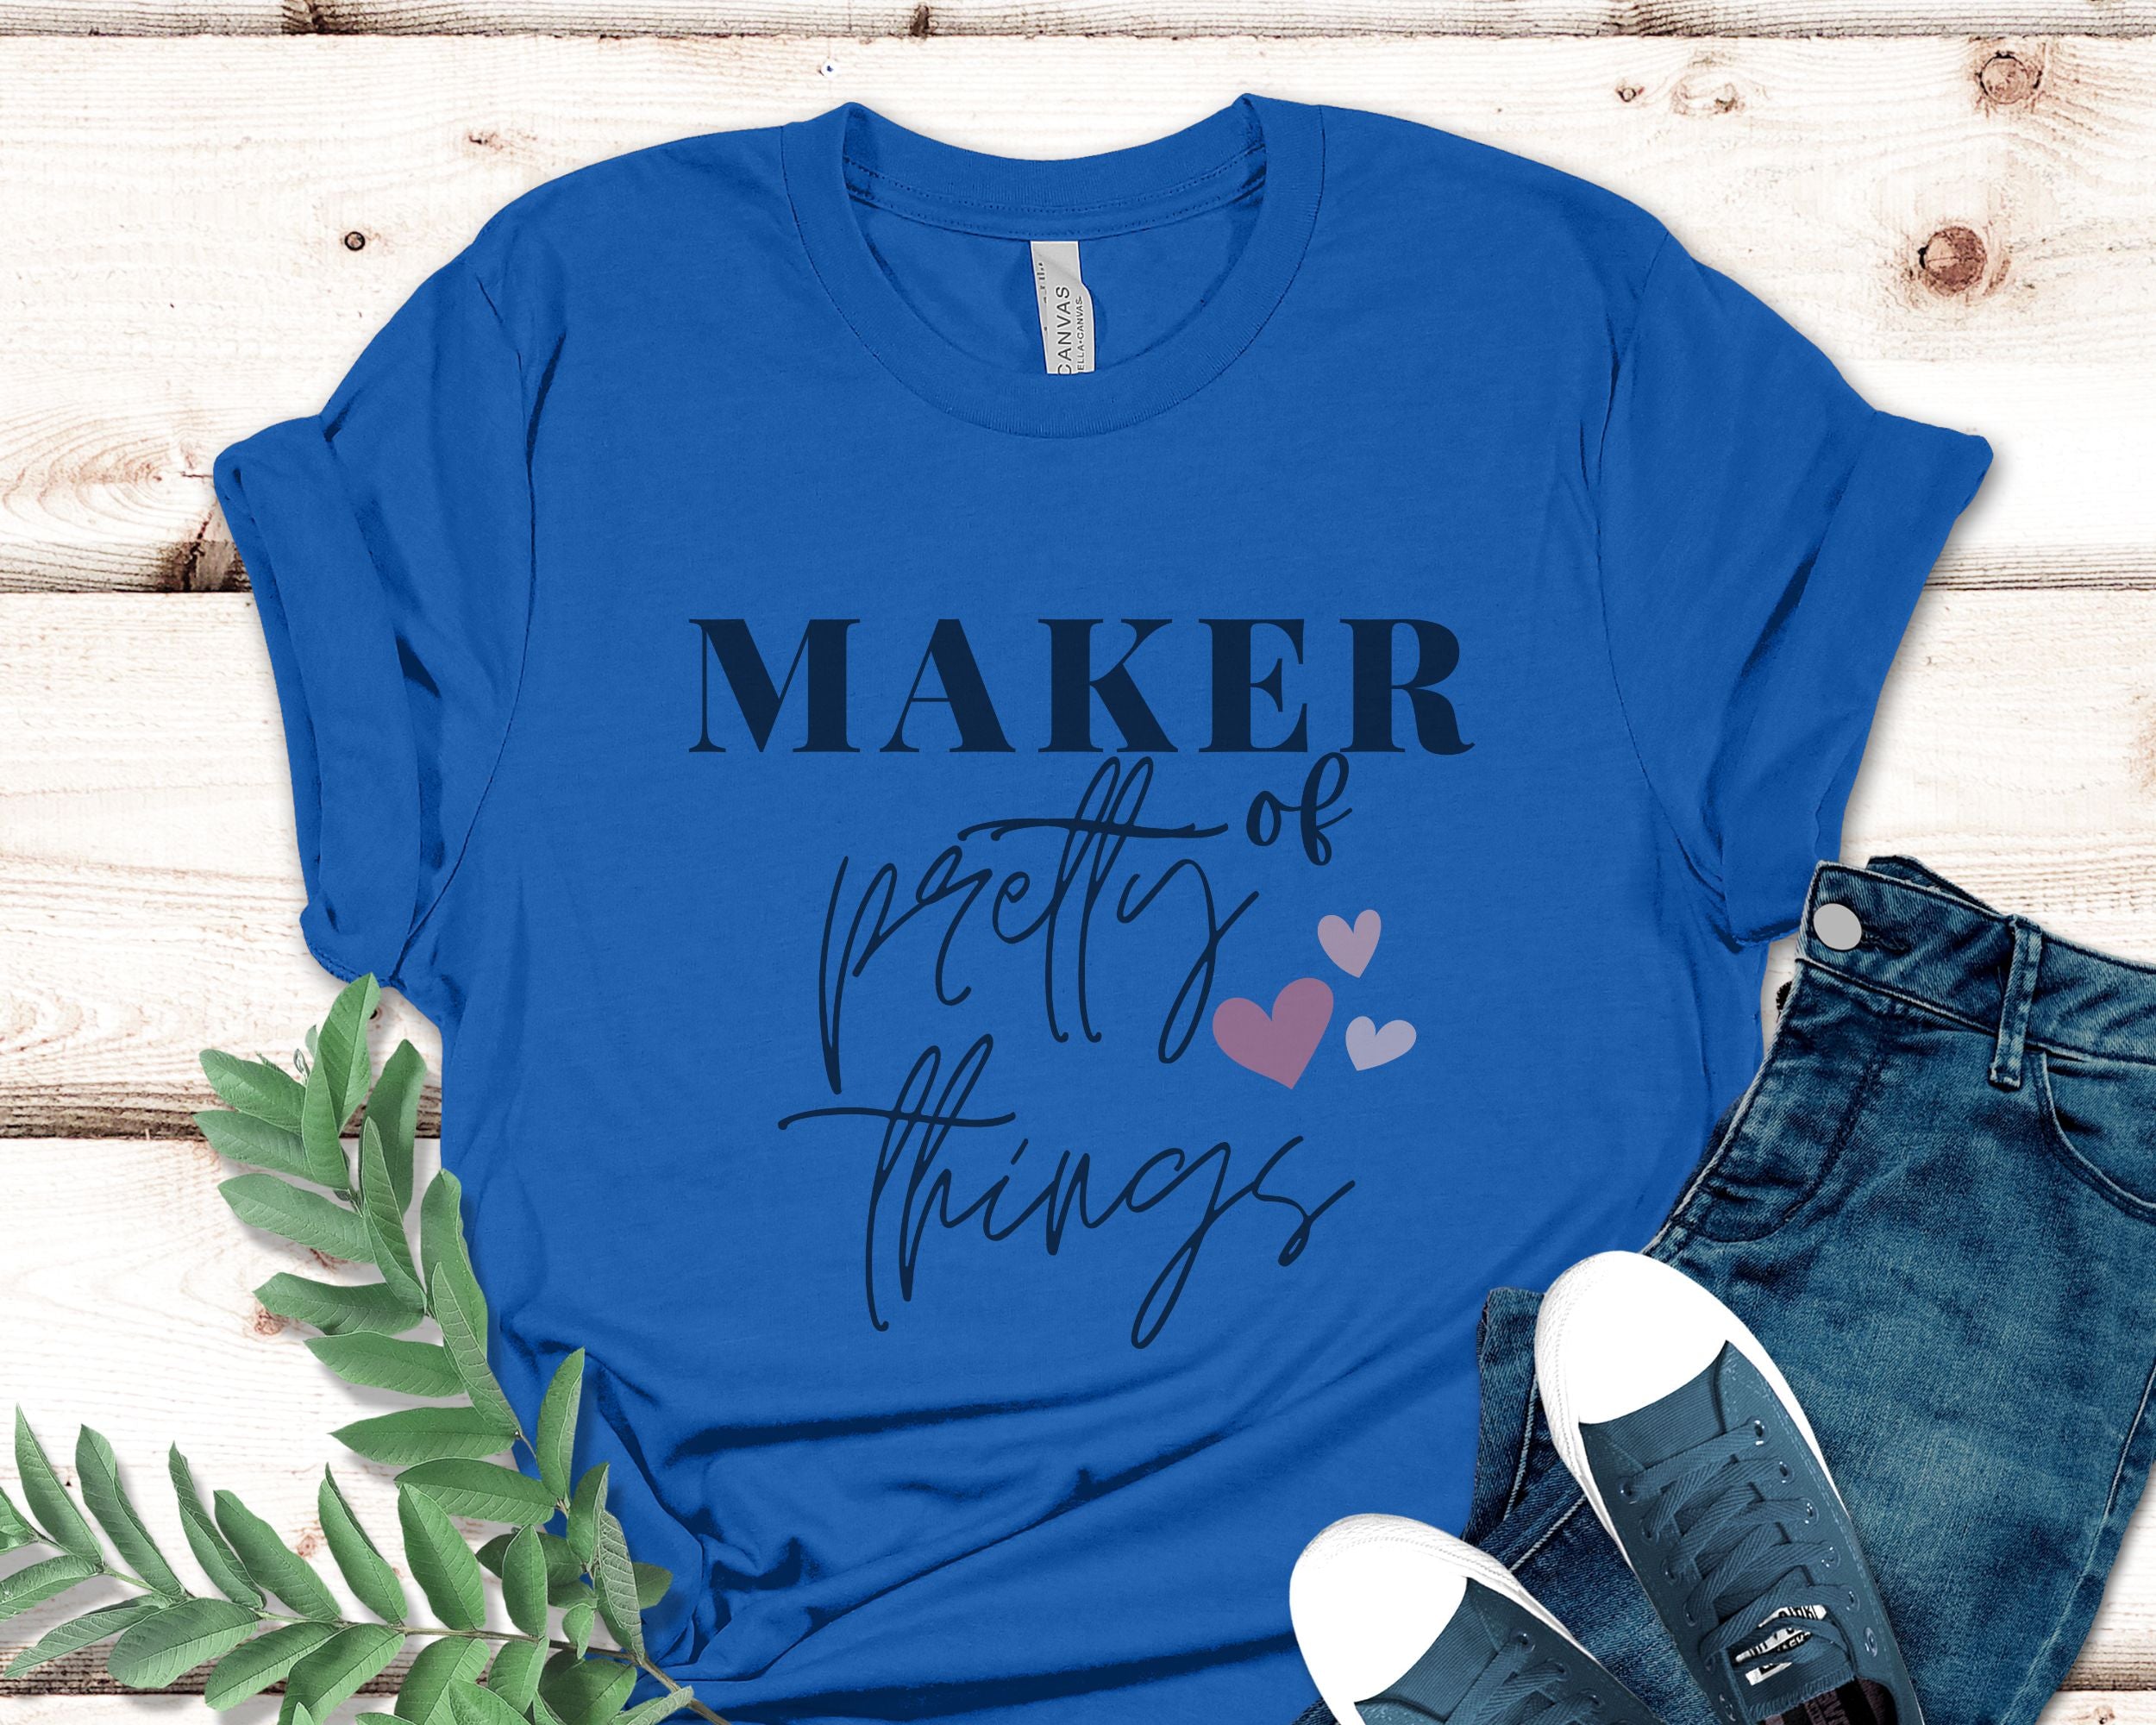 Maker of Pretty Things T shirt